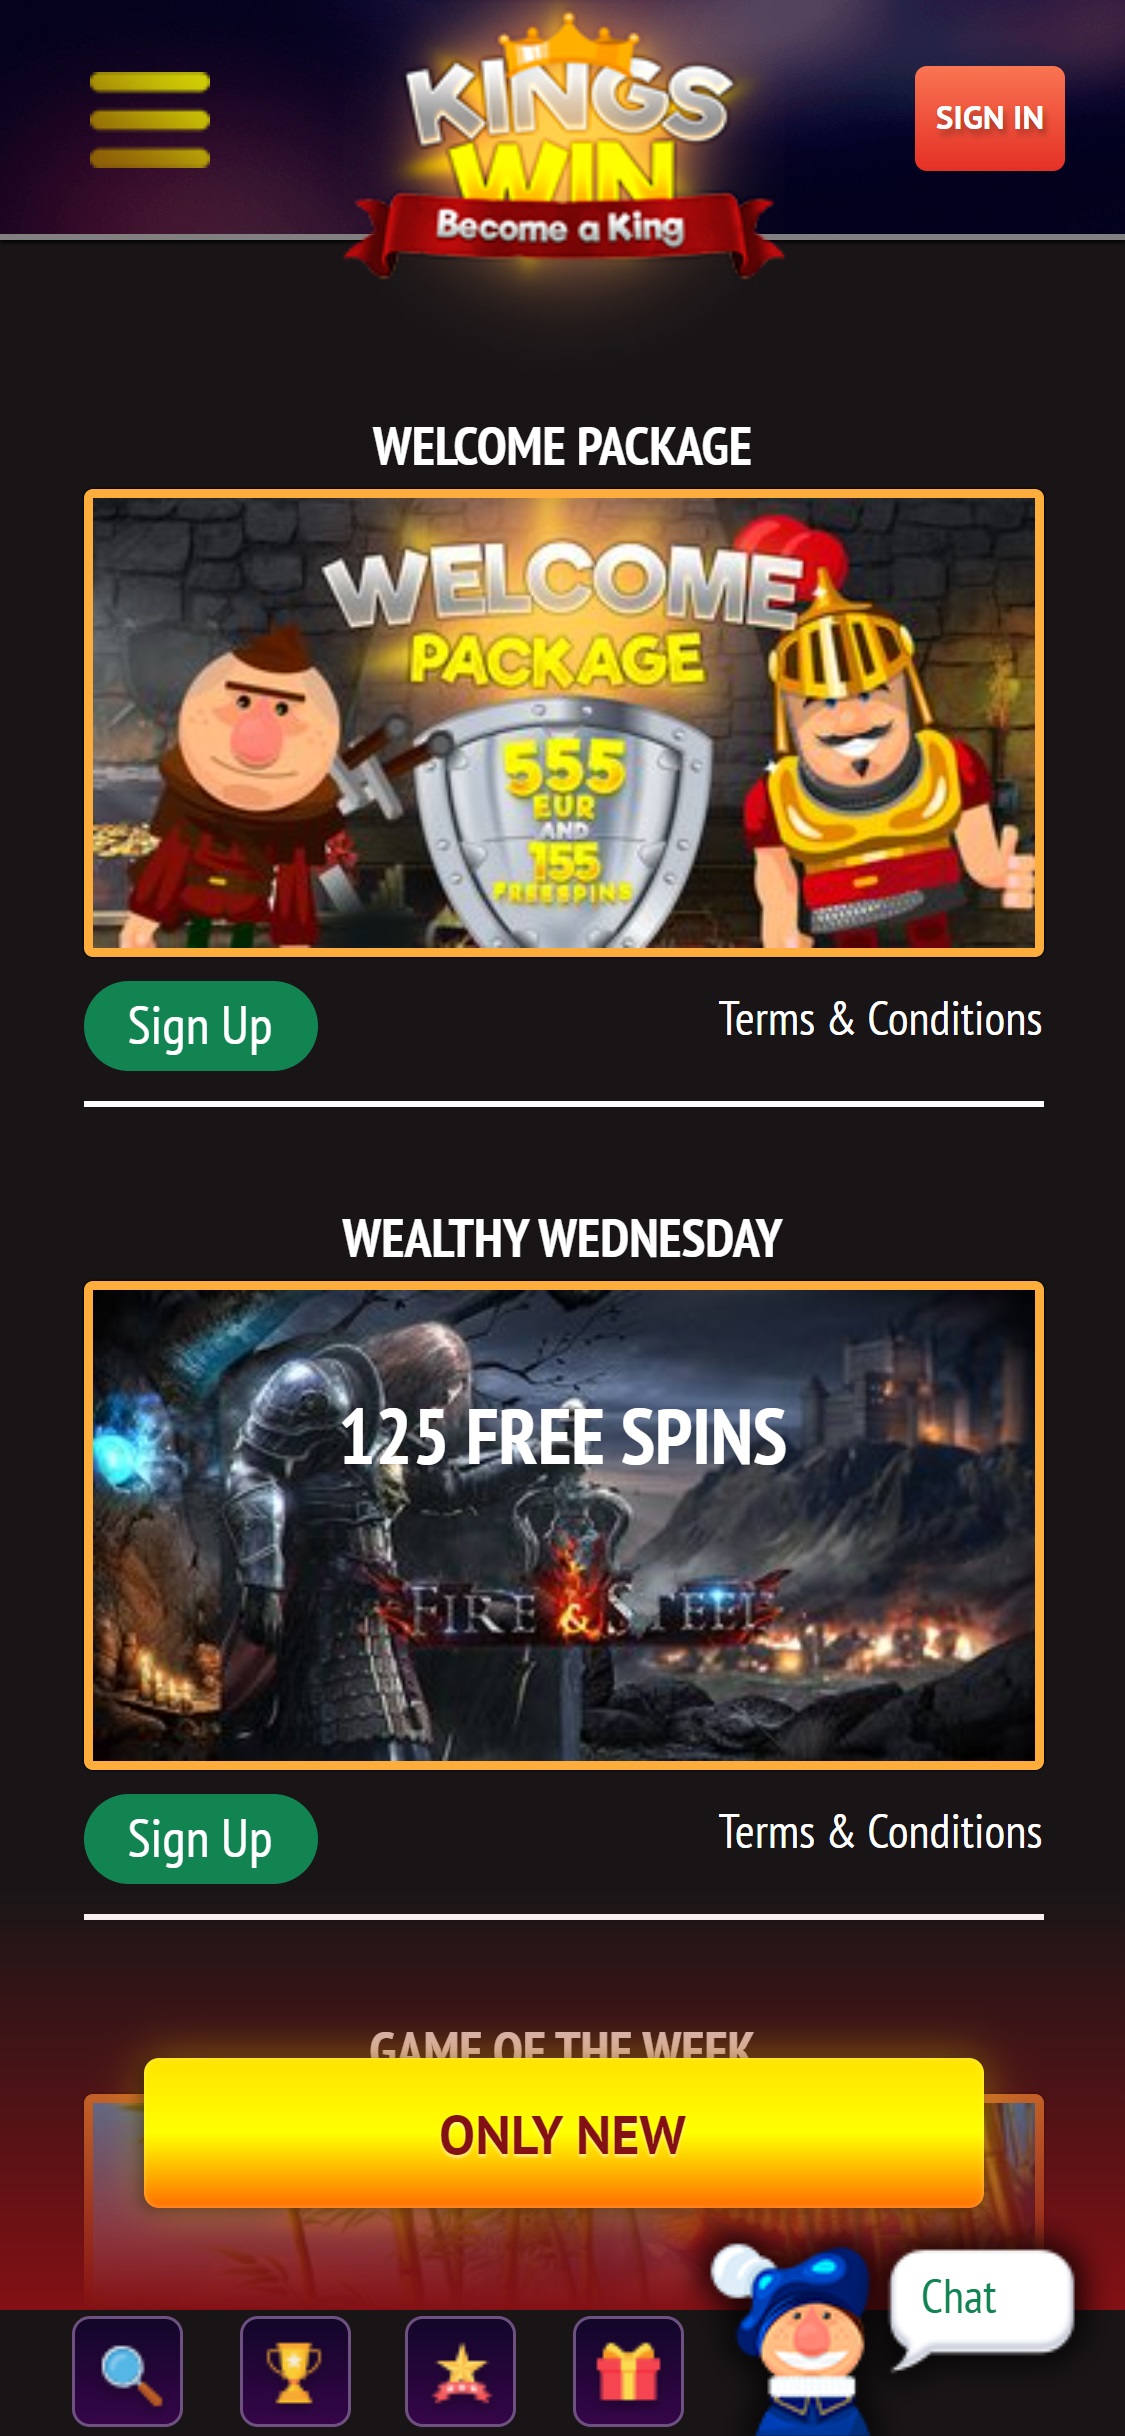 KingsWin Casino Mobile No Deposit Bonus Review